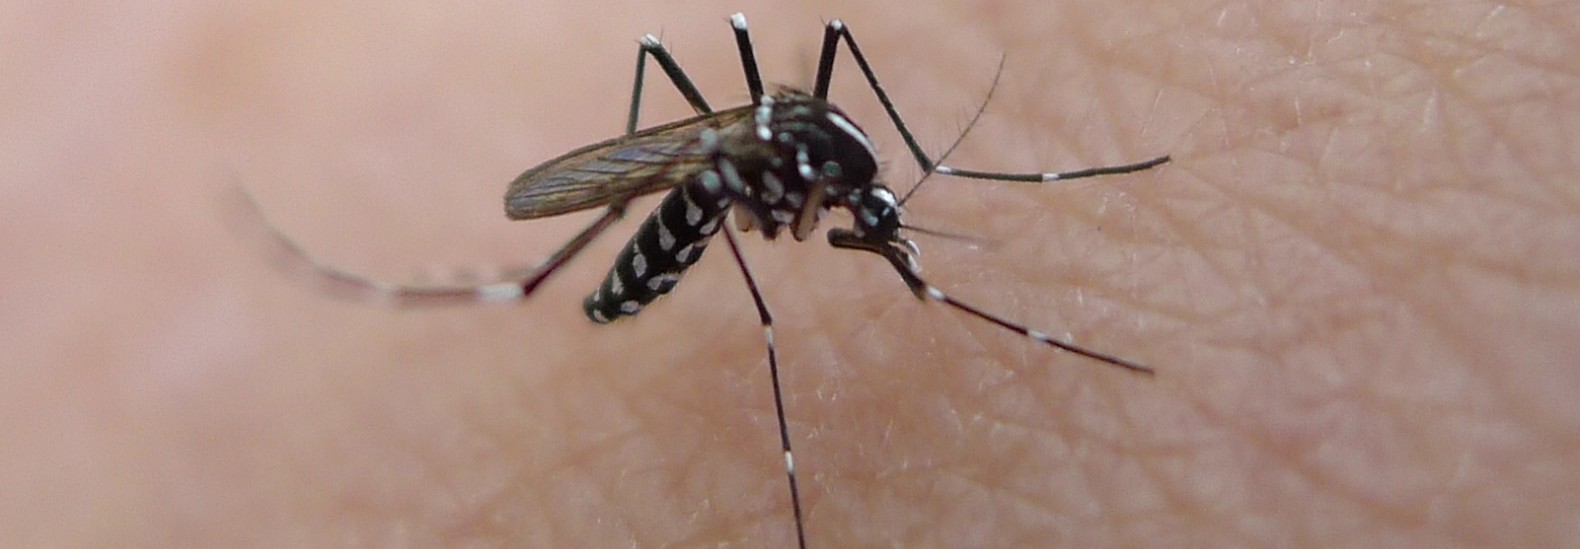 Mosquito-2-1580x549